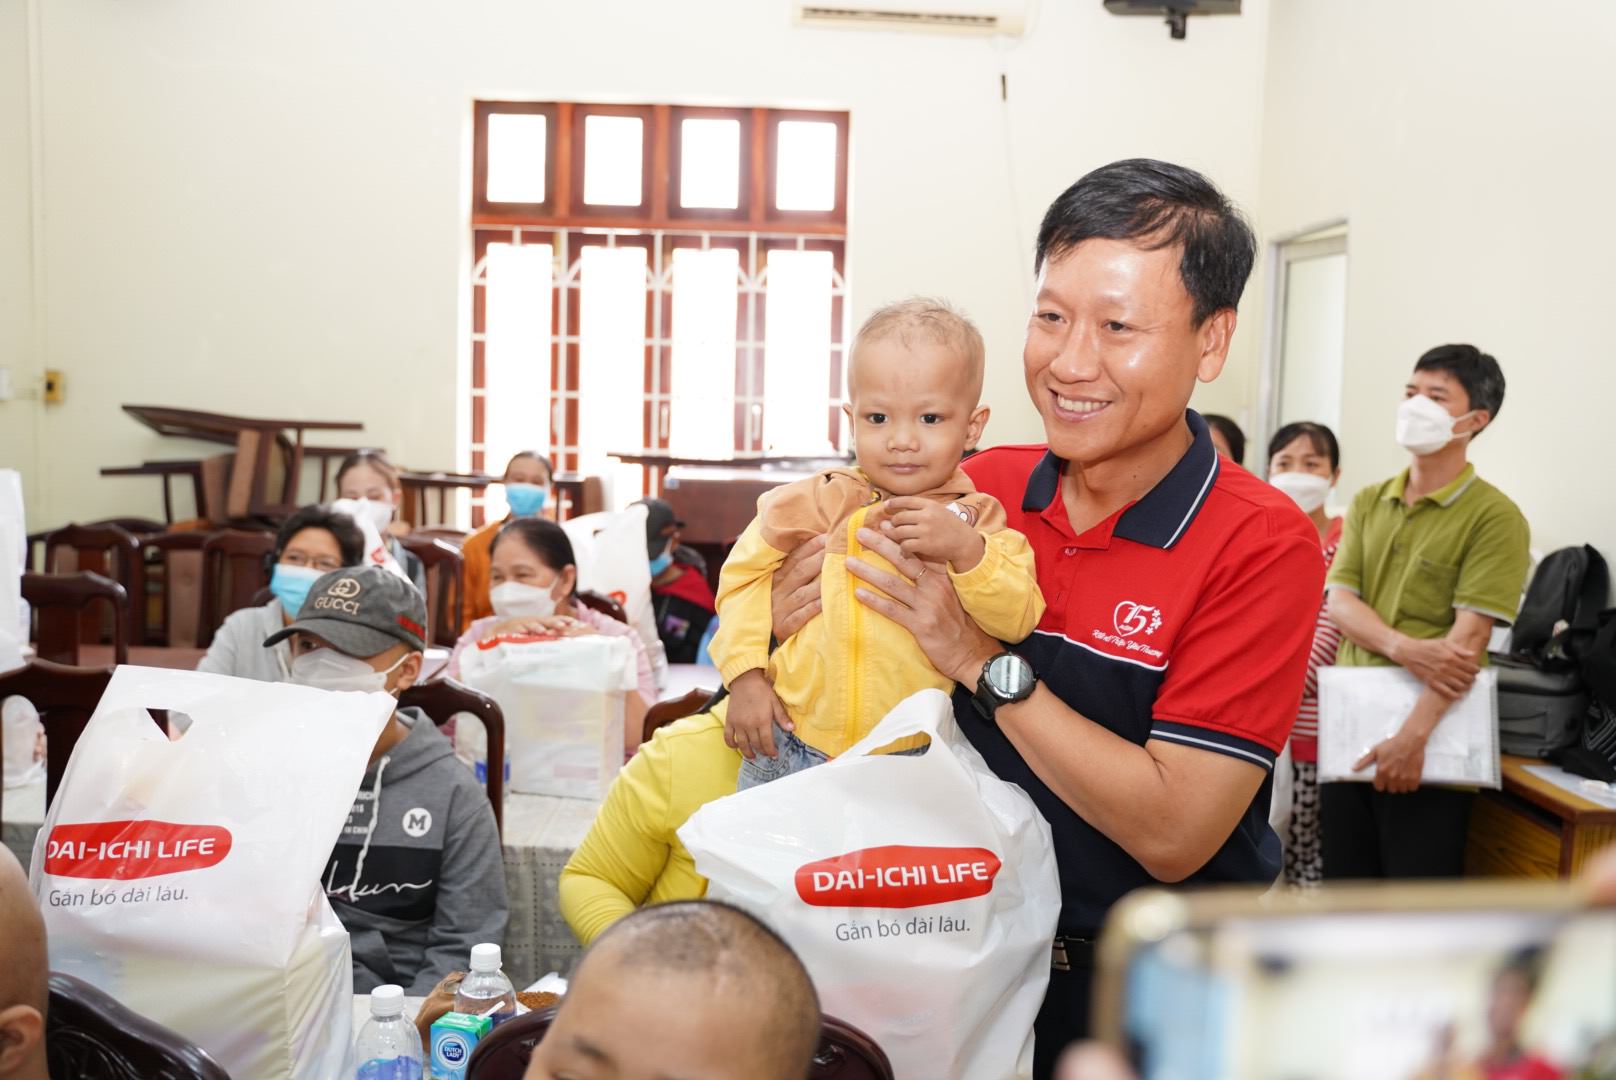 Dai-ichi Life Việt Nam tiếp tục hỗ trợ bệnh nhi ung thư có hoàn cảnh khó khăn tại TP. Hồ Chí Minh...